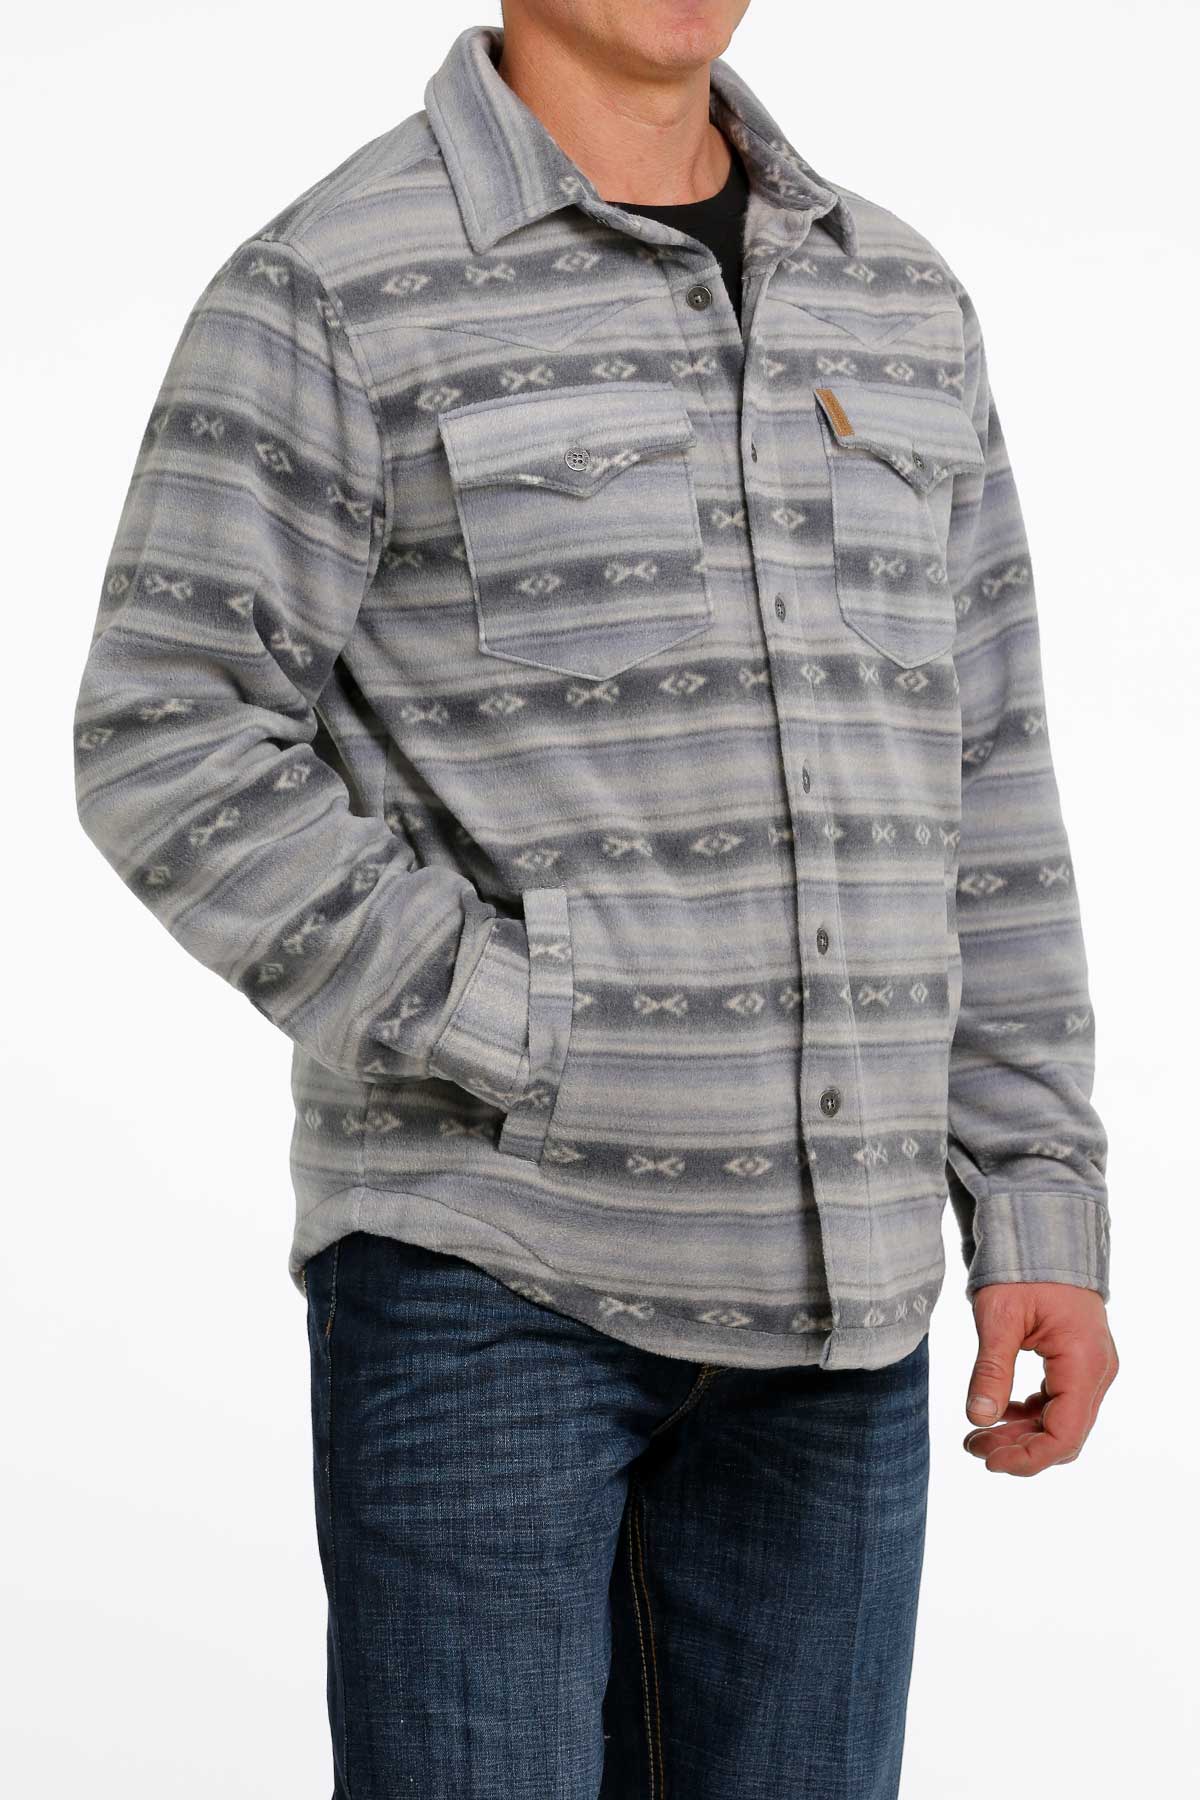 Cinch Men's Fleece Shirt Jacket